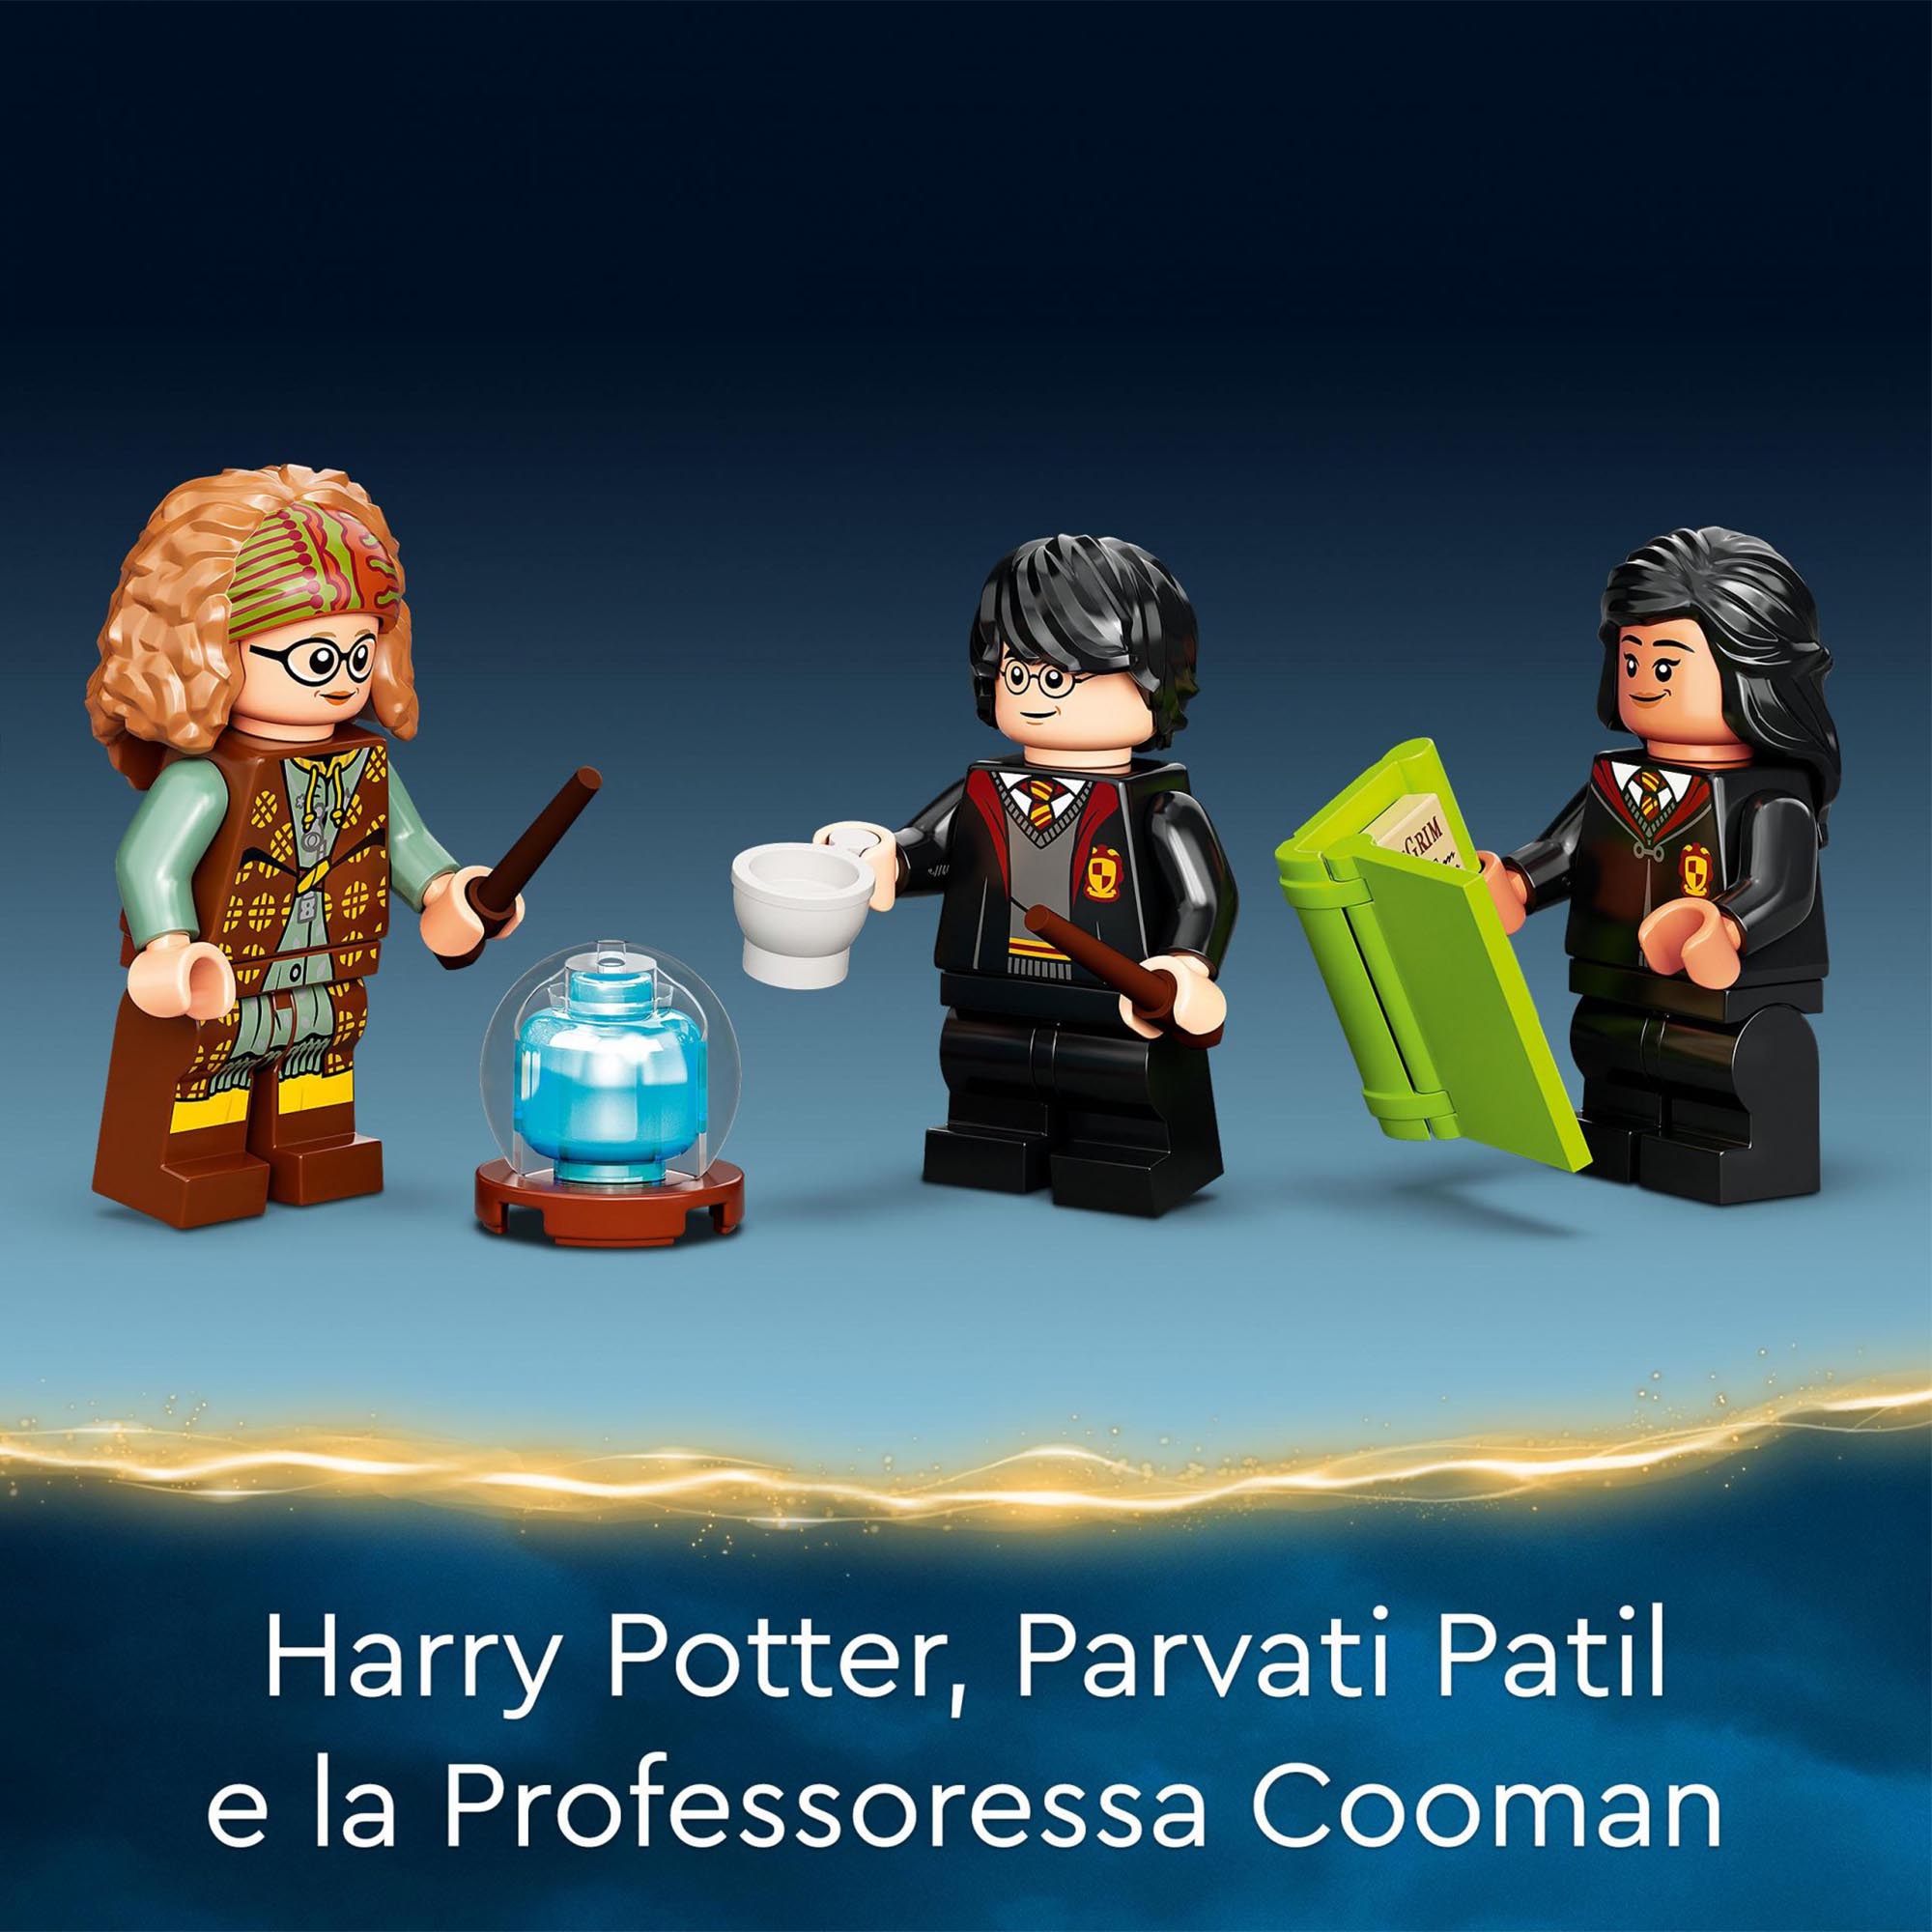 LEGO 76396 Harry Potter Lezione di Divinazione a Hogwarts, Libro di Magia, Idea  76396, , large